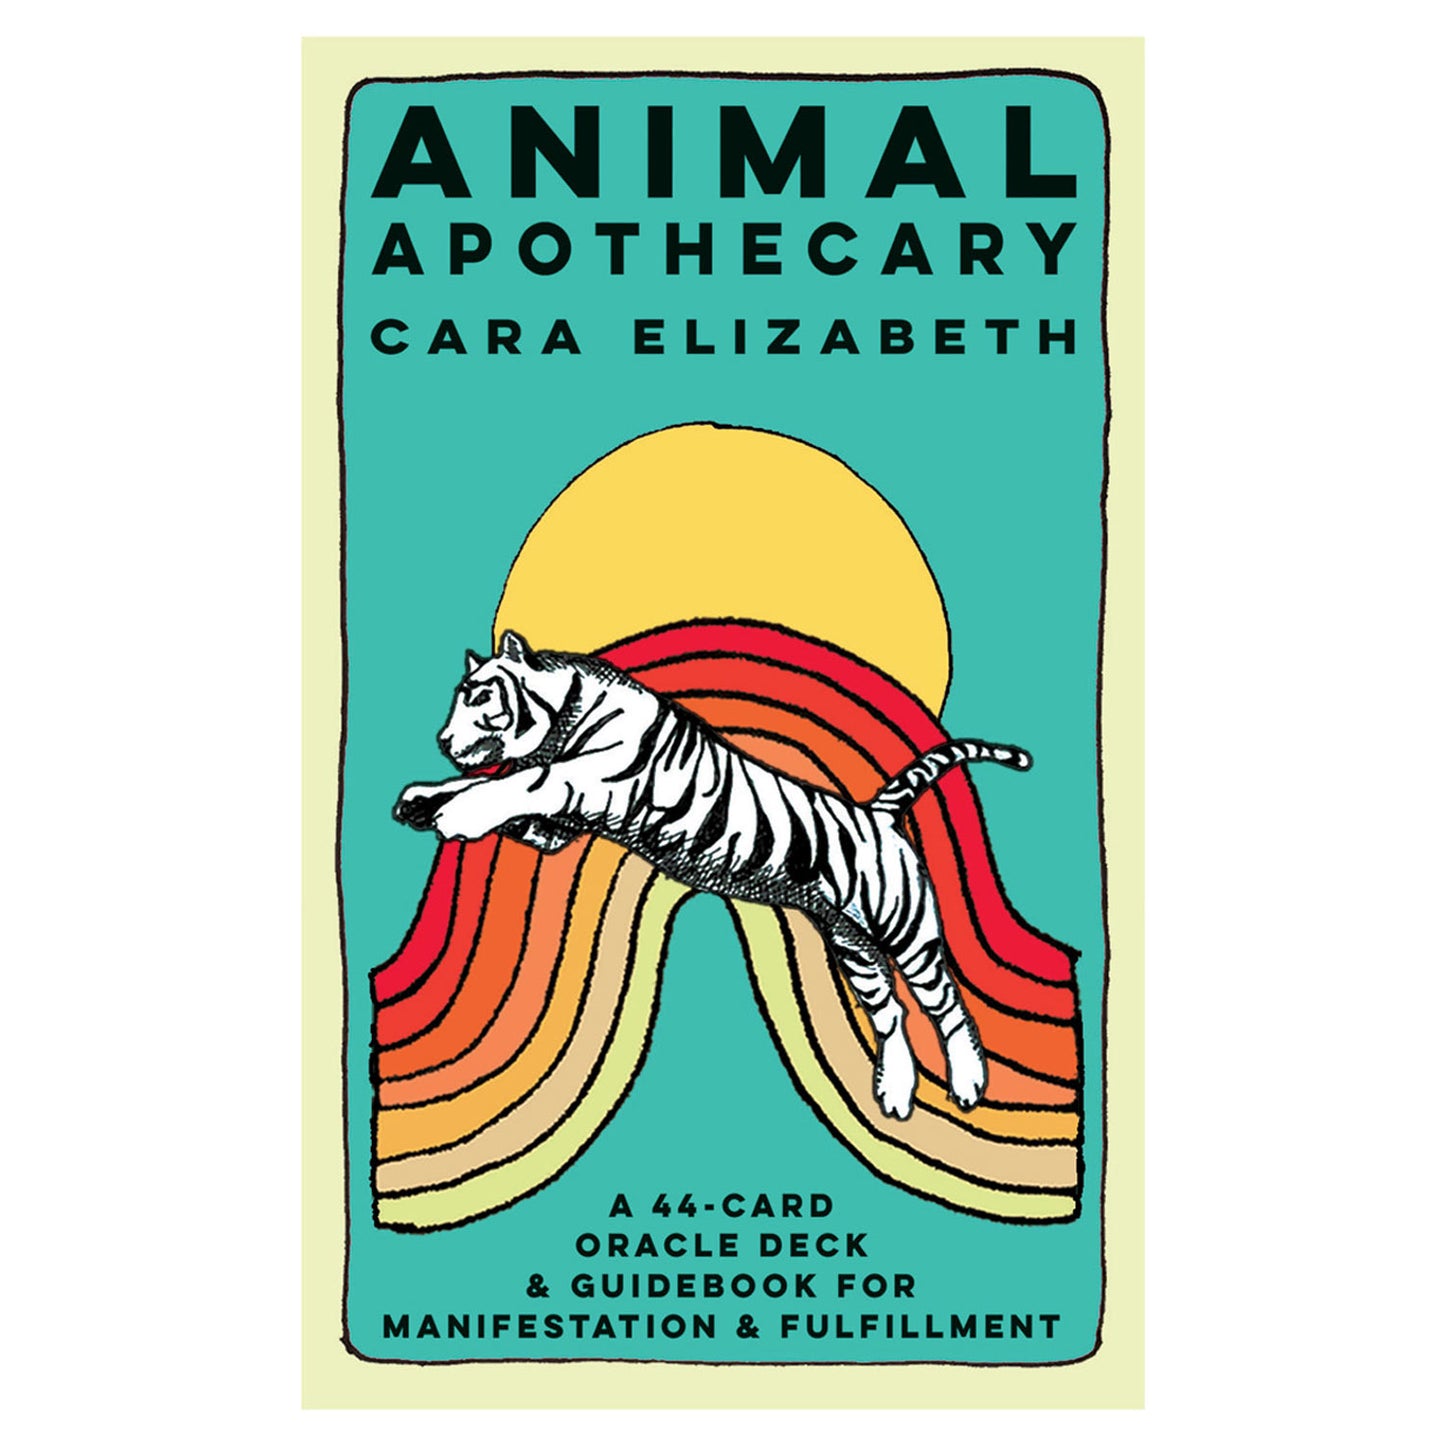 Animal Apothecary: 44-Card Oracle Deck & Guidebook by Cara Elizabeth